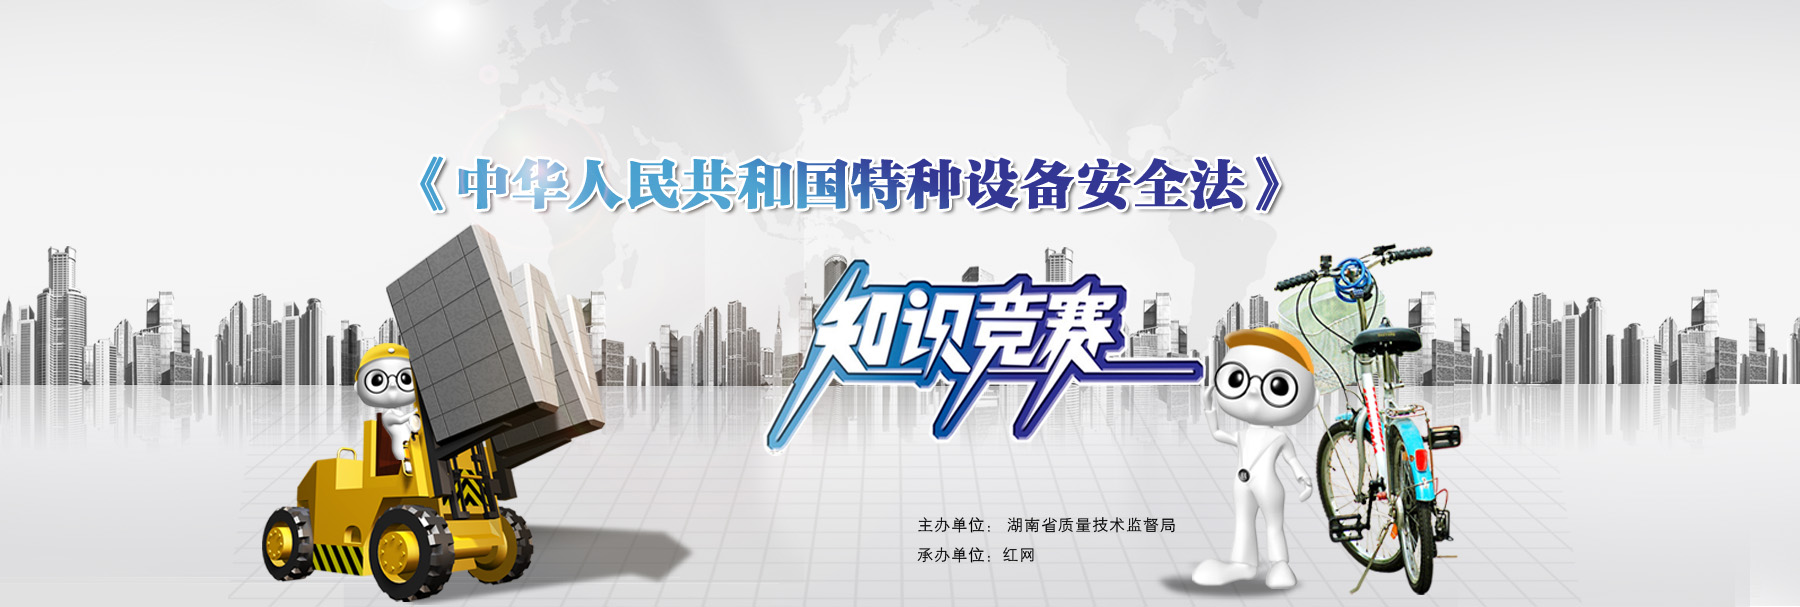 中华人民共和国特种设备安全法》知识竞赛